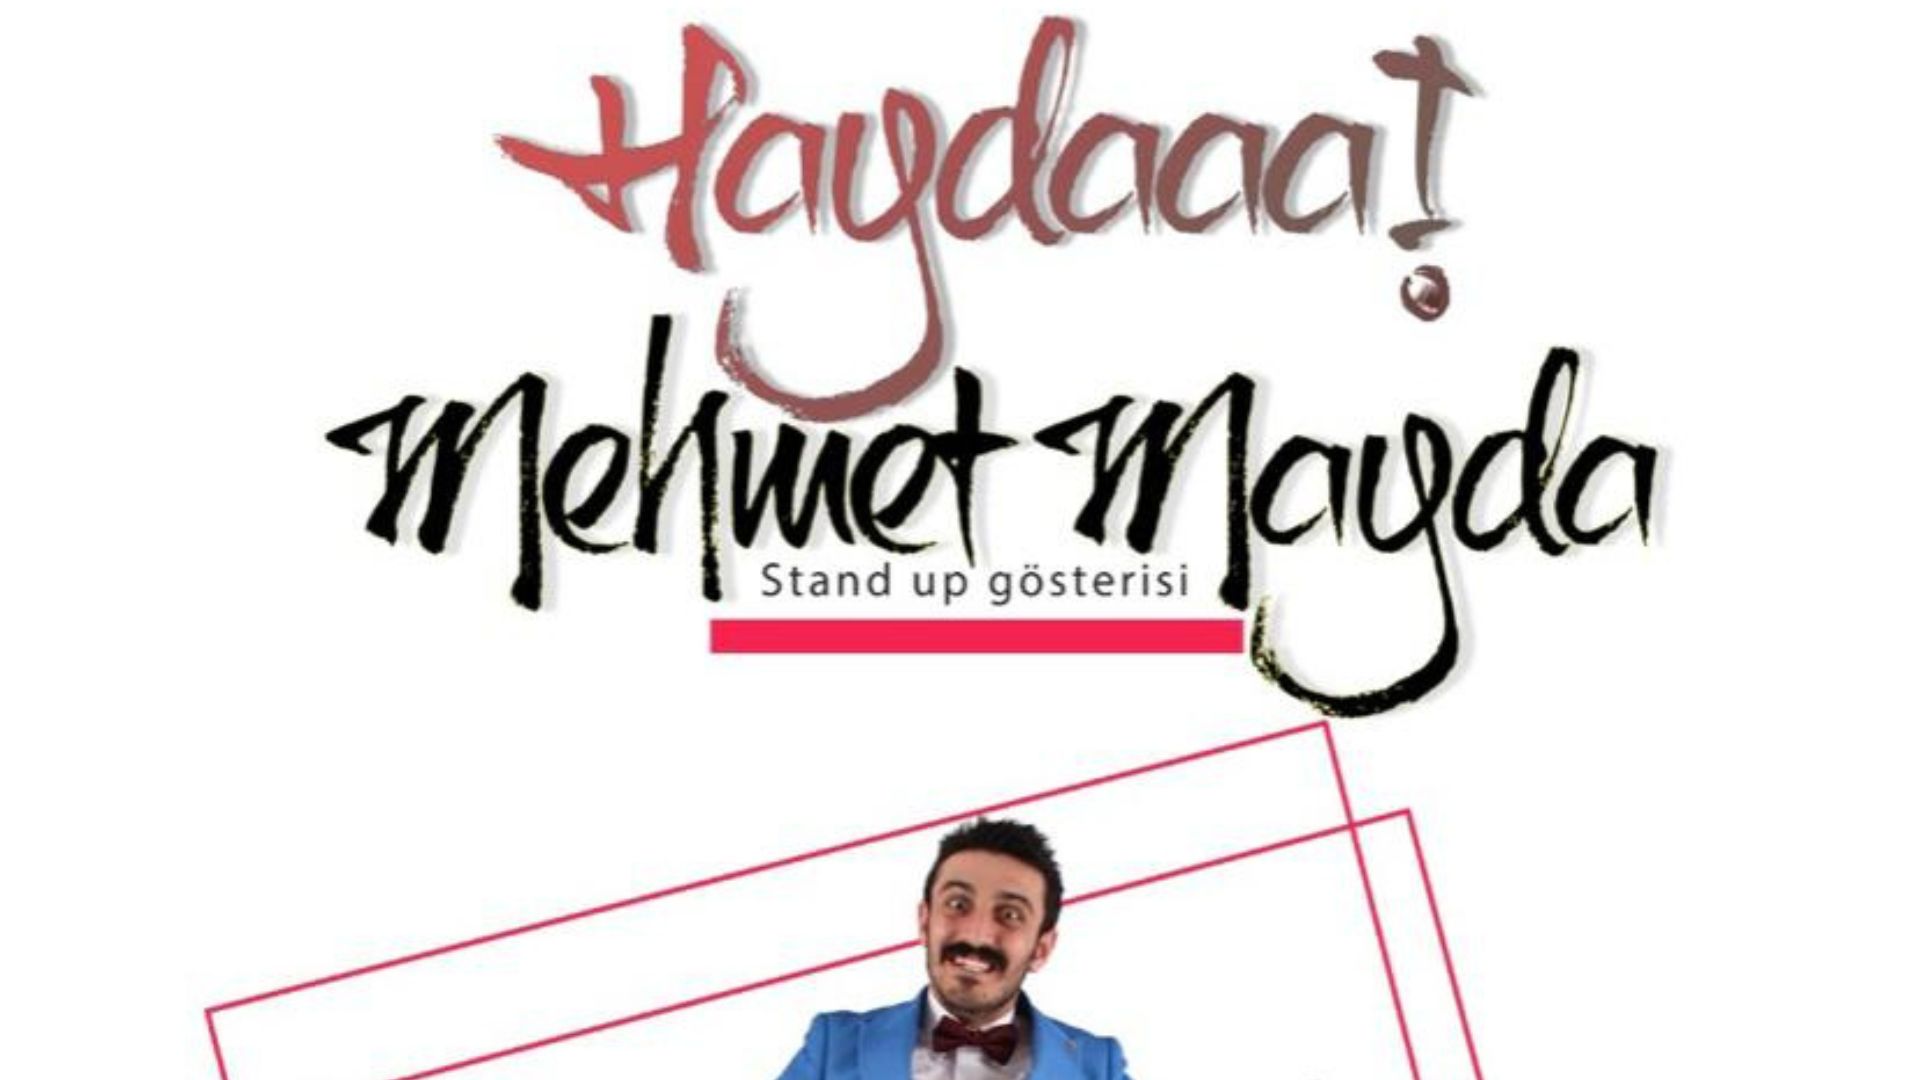 Haydaaa Mehmet Mayda stand - up